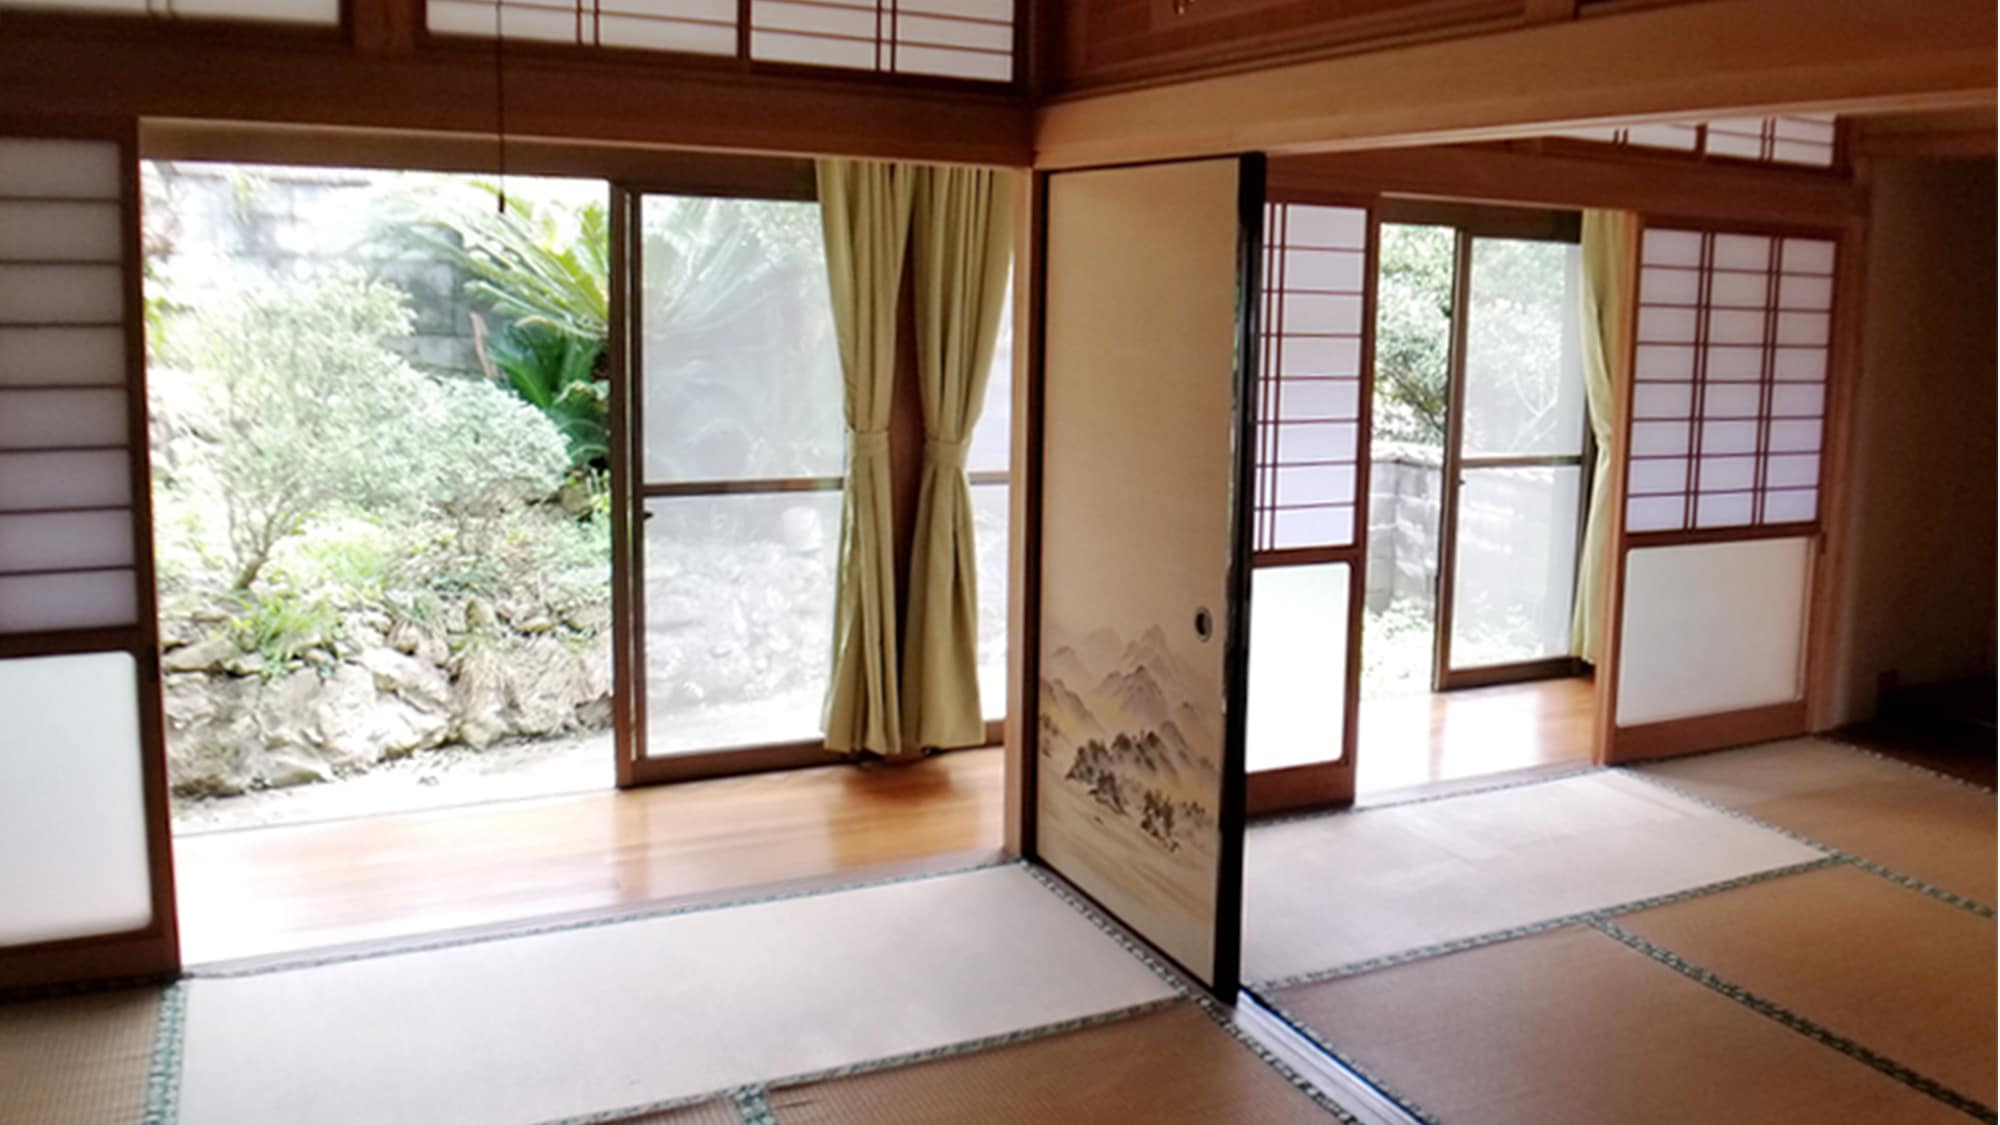 ・ <ห้อง> ห้องสไตล์ญี่ปุ่นขนาดใหญ่ที่คุณสามารถผ่อนคลายบนเสื่อทาทามิ